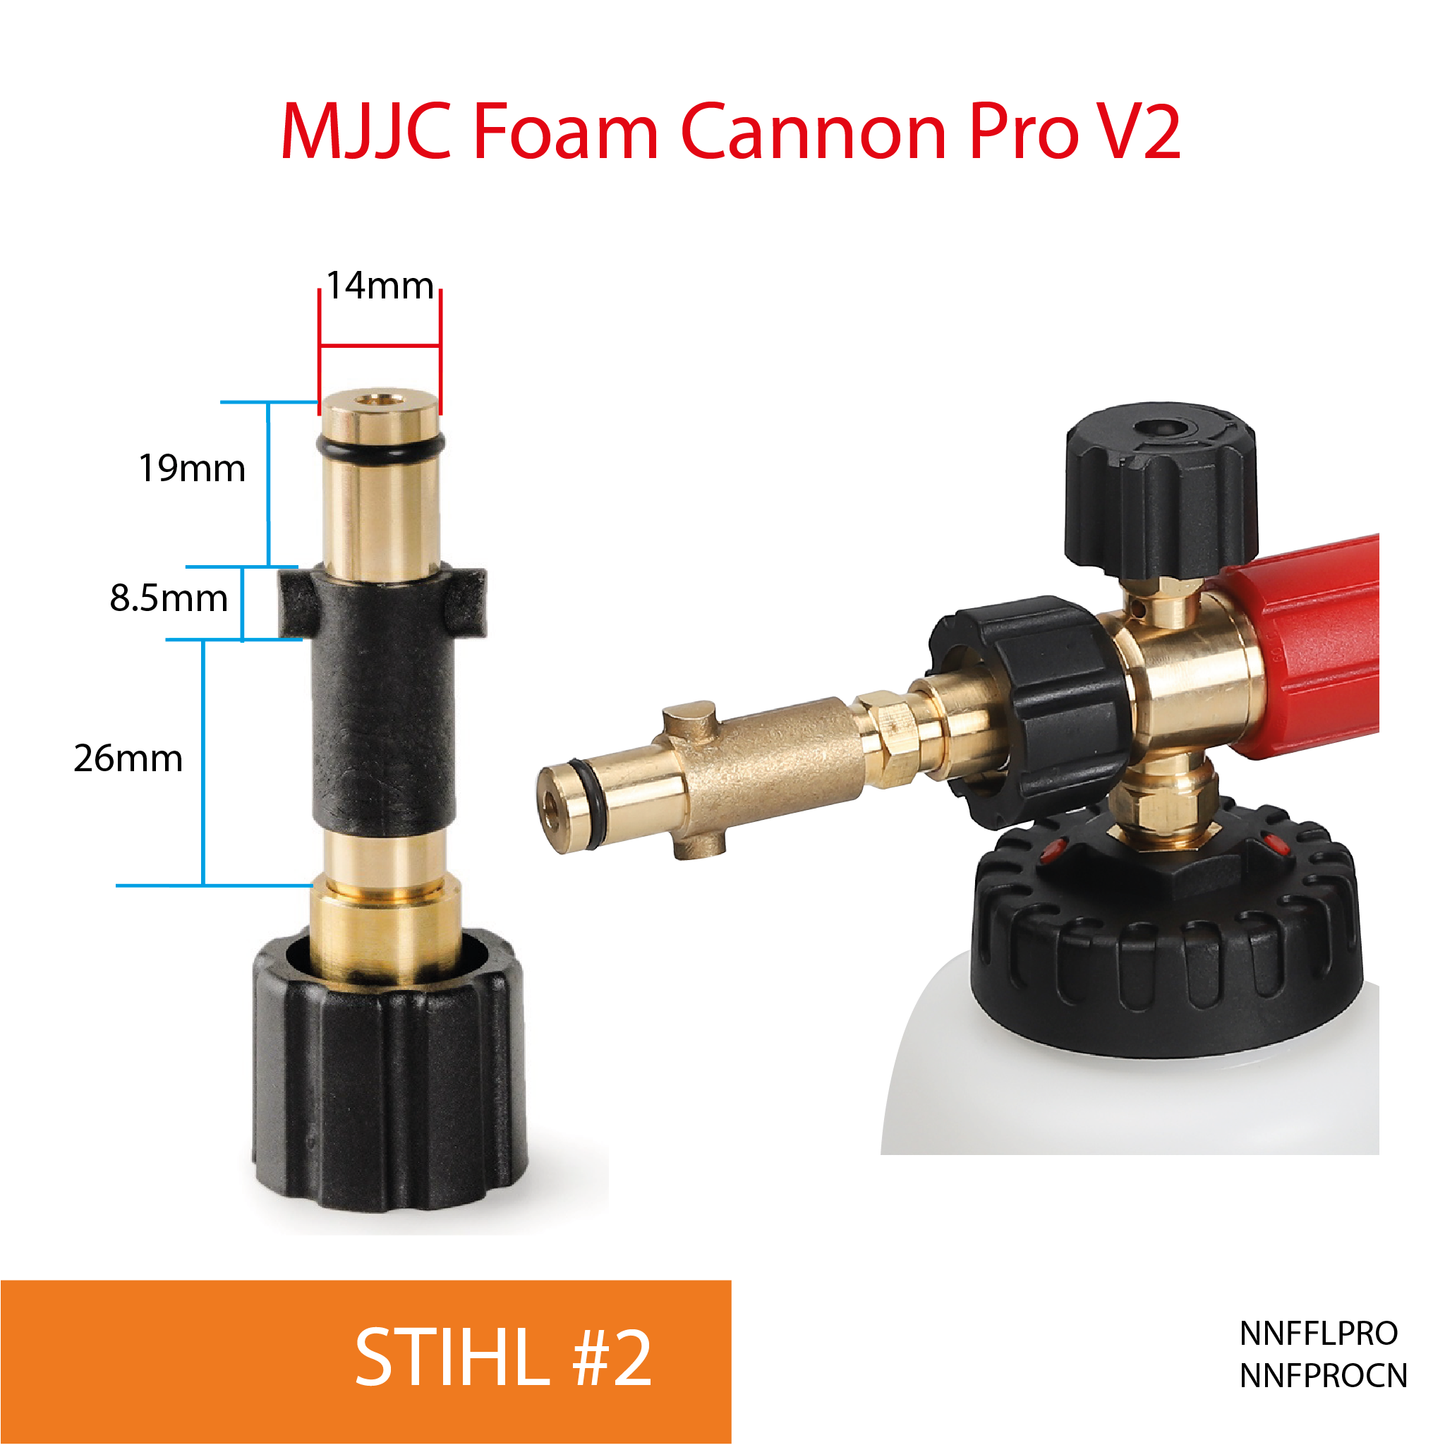 STIHL pressure washer - MJJC Foam Cannon Pro V2 (Pressure Washer Snow Foam Lance Gun)